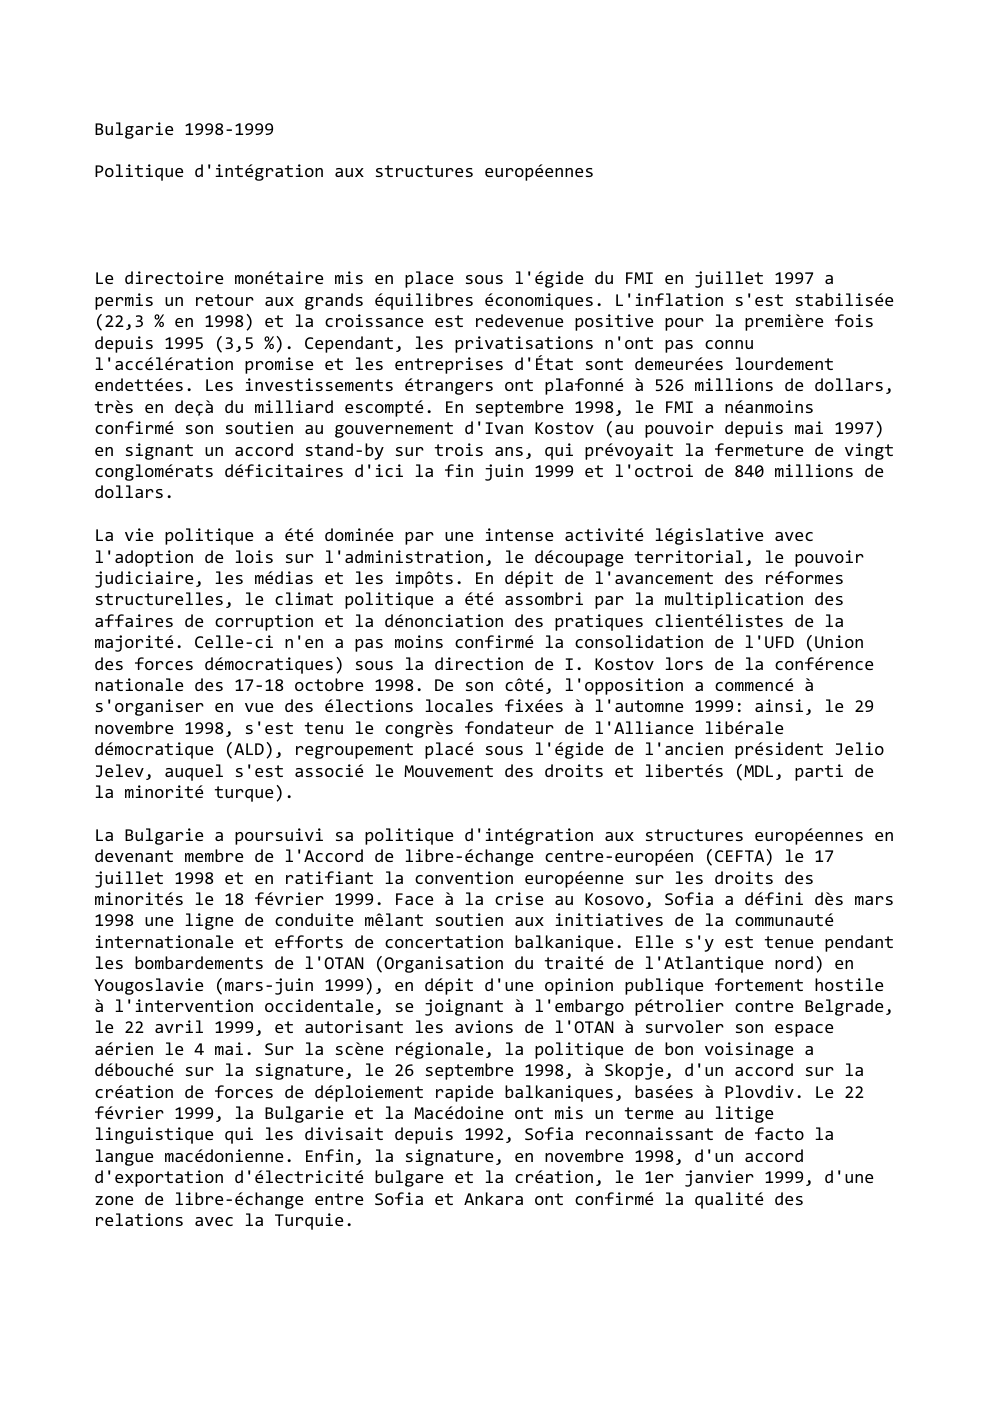 Prévisualisation du document Bulgarie 1998-1999
Politique d'intégration aux structures européennes

Le directoire monétaire mis en place sous l'égide du FMI en juillet 1997...